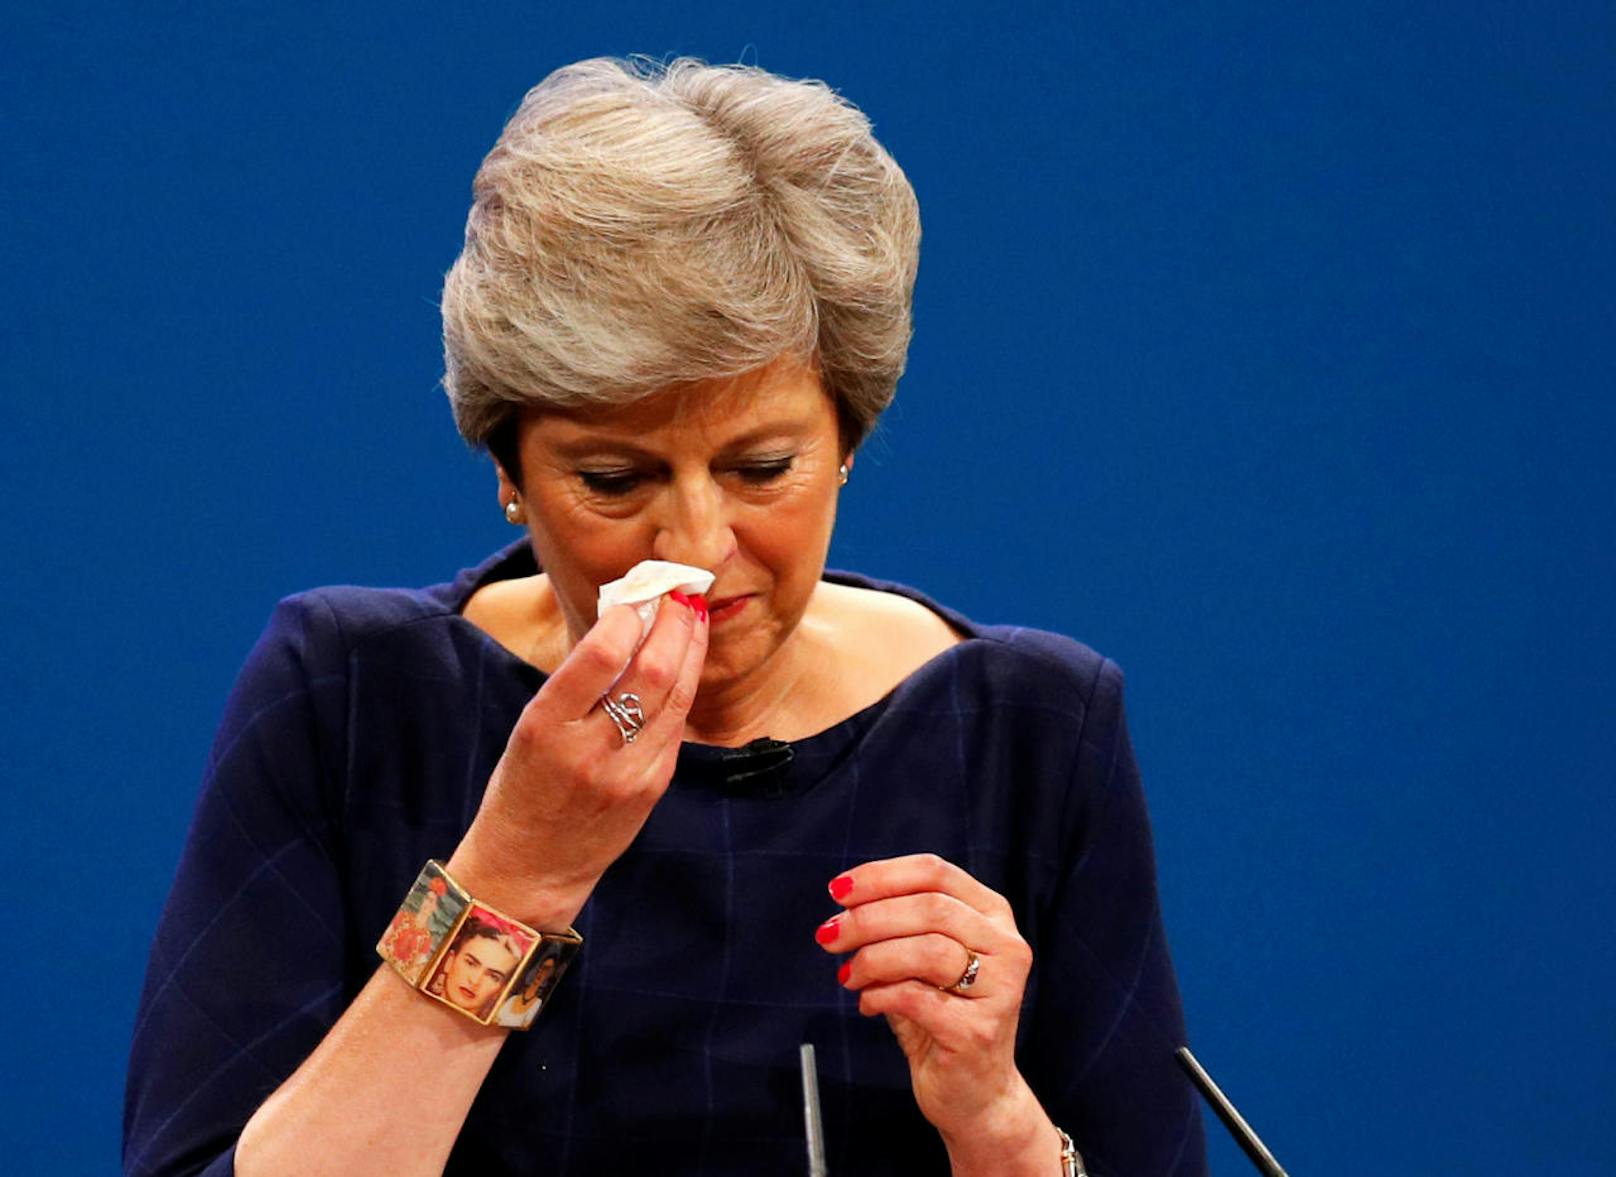 Bei dieser Rede lief für die britische Premierministerin Theresa May alles schief. Hustend und krächzend versuchte sie am Parteitag ihr Statement anzubringen.